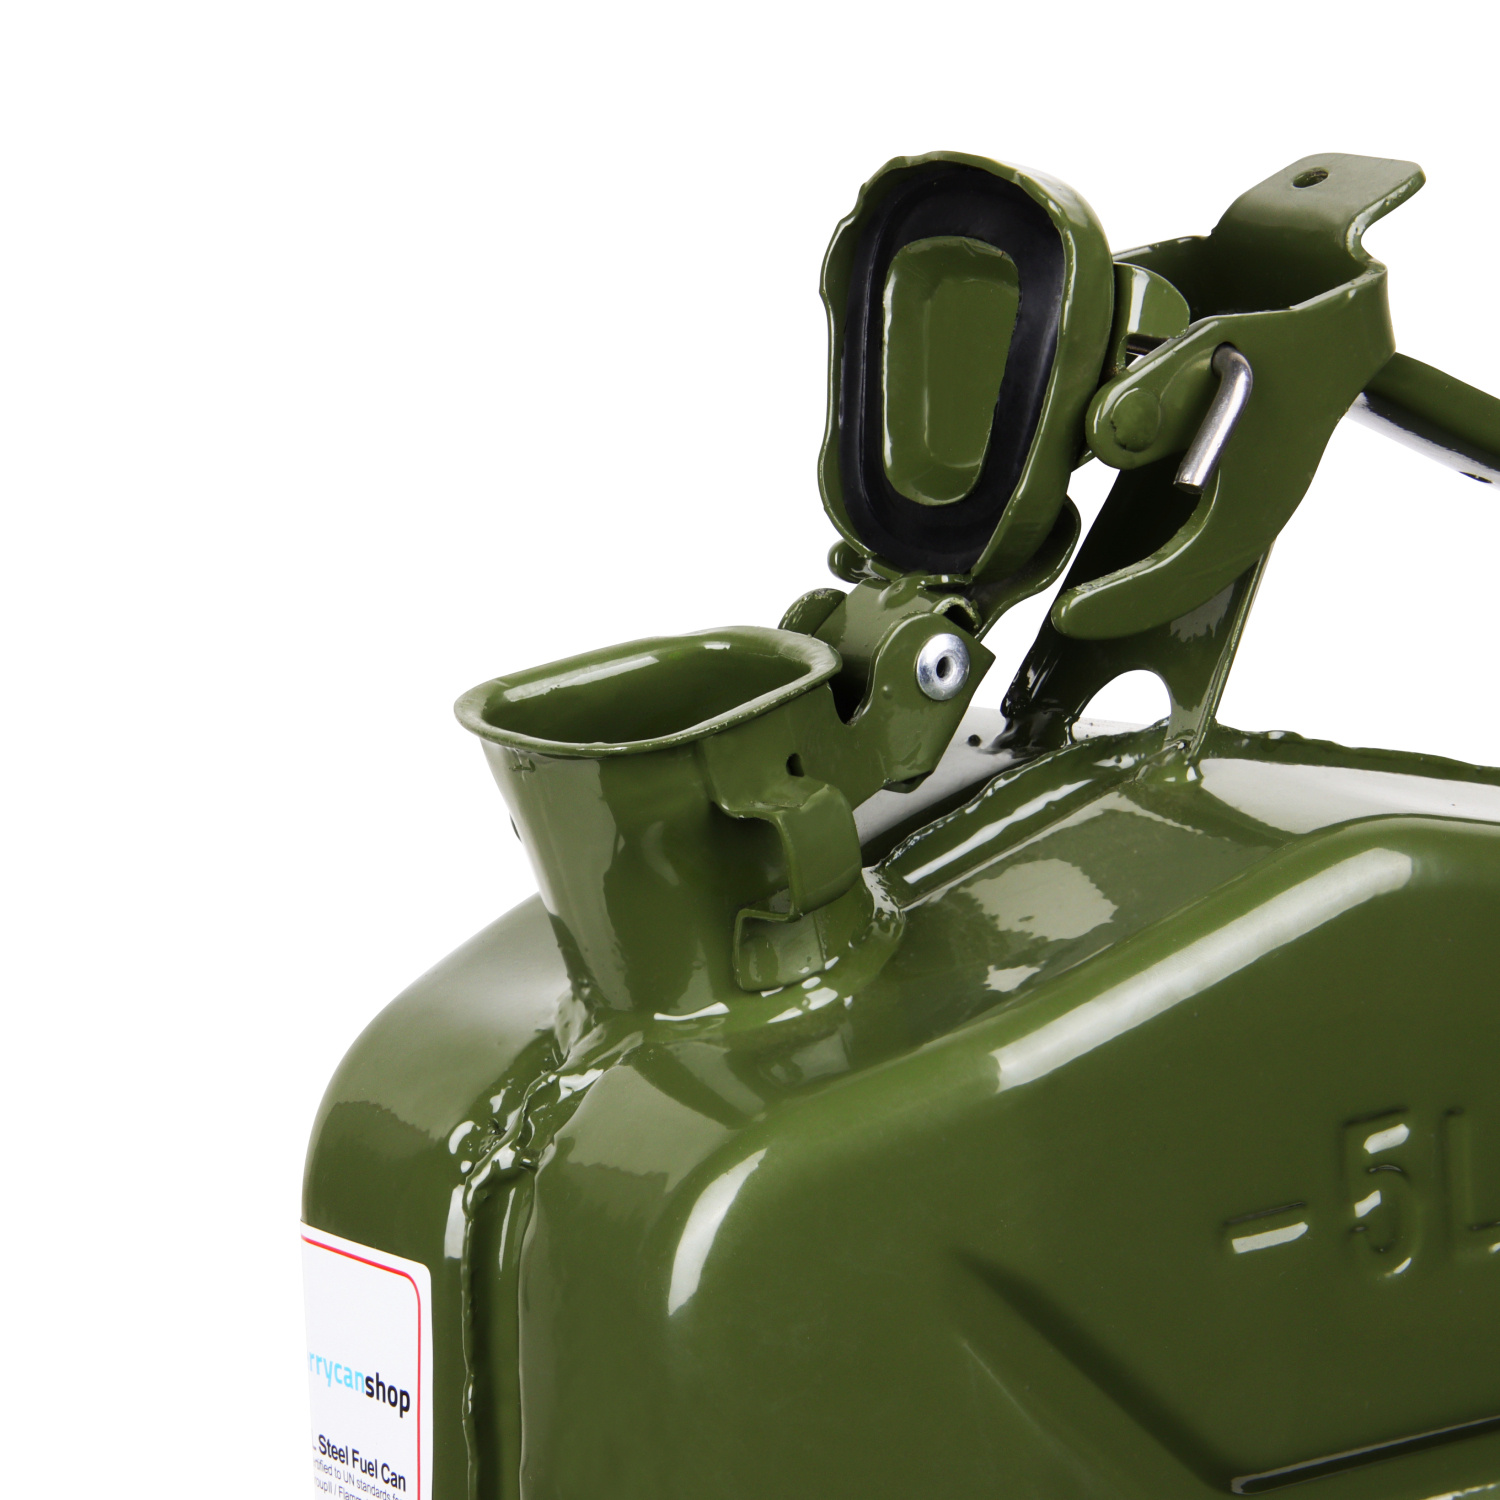 5 Liter Metall Kanister für Benzin & Diesel - grün 